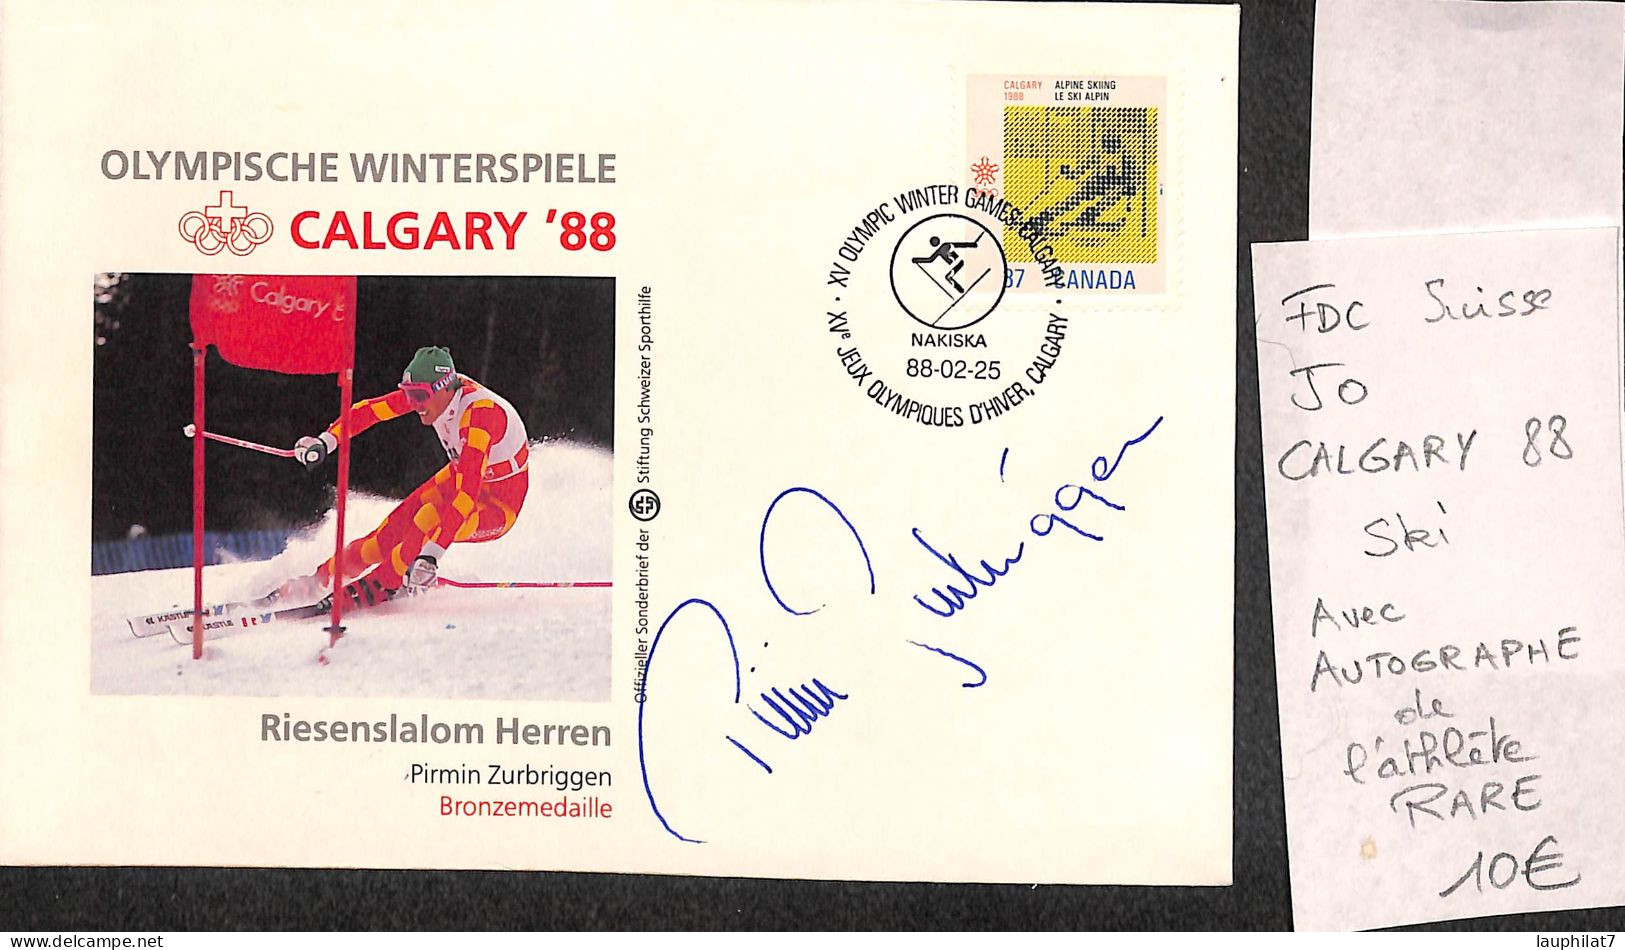 [900095]TB//-Suisse 1988 - FDC, Documents, Pirmin Zurbriggen, Calgary, Avec Autographe De L'athlète, RARE, Jeux Olympiq - Winter 1988: Calgary